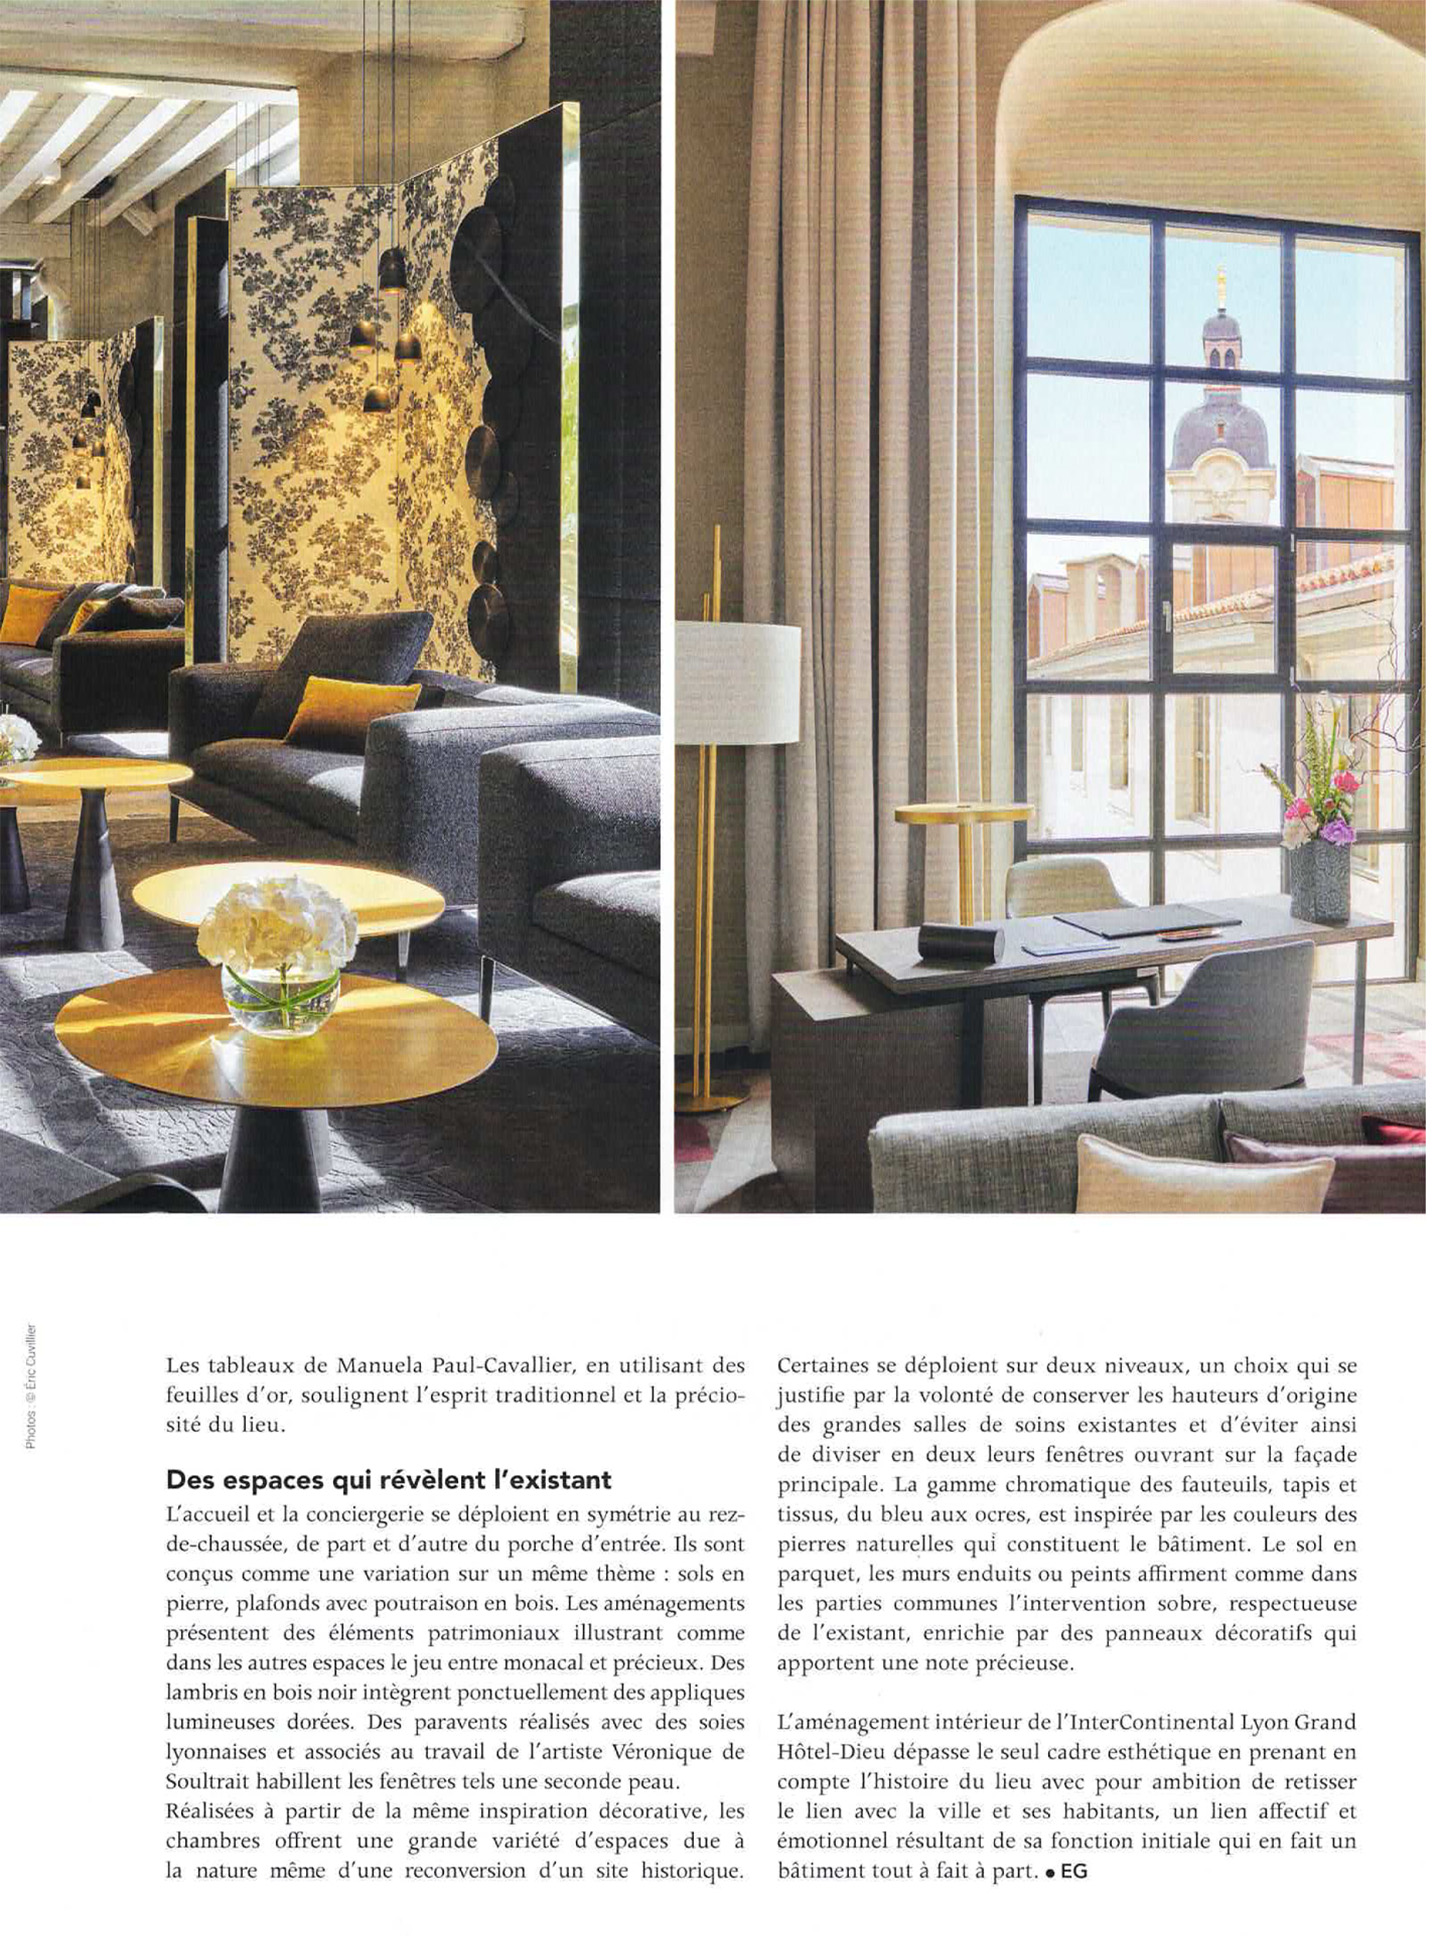 Article sur l'InterContinental Lyon Hotel Dieu réalisé par le studio jean-Philippe Nuel dans le magazine In Interiors, nouvel hotel de luxe, architecture d'intérieur de luxe, patrimoine historique